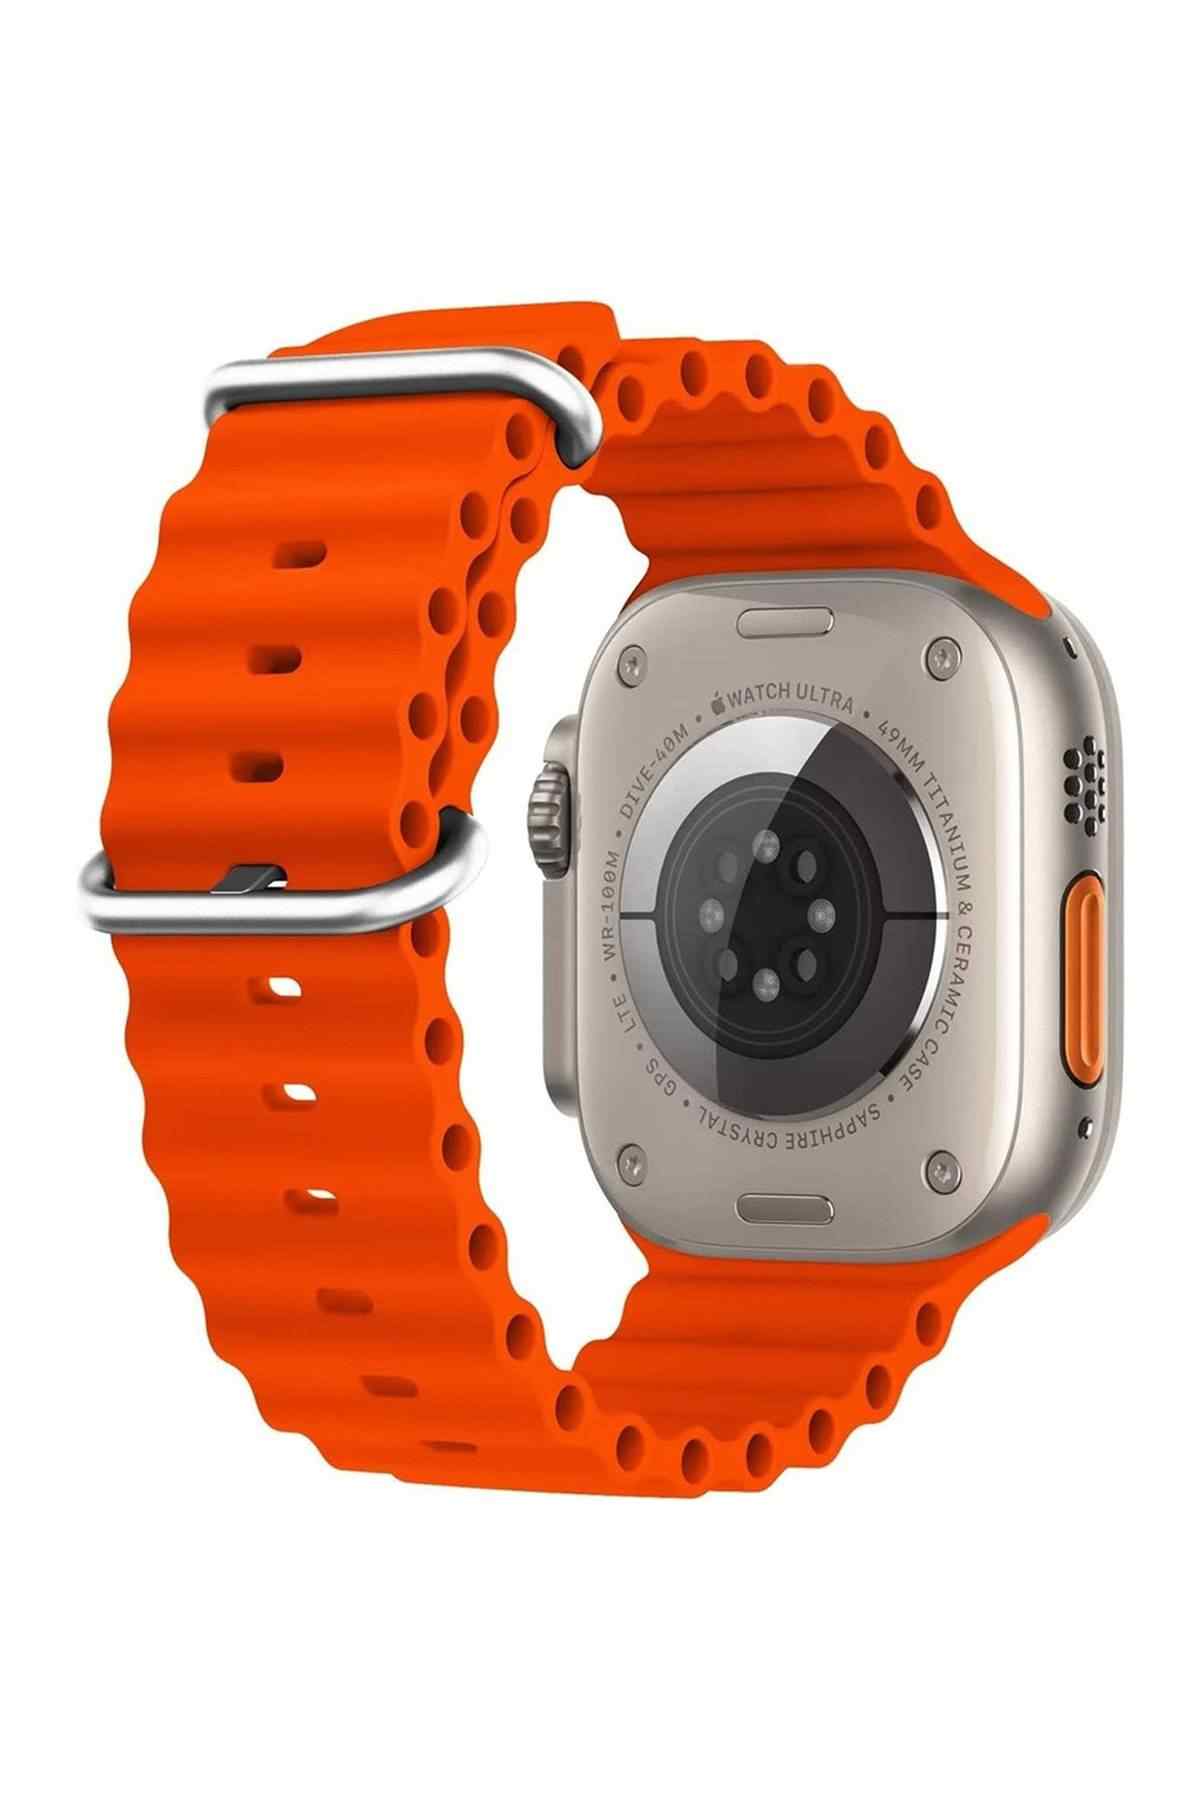 GS8 Ultra Multi-Function Watch Premium Akıllı Saat - Yıldız Işığı